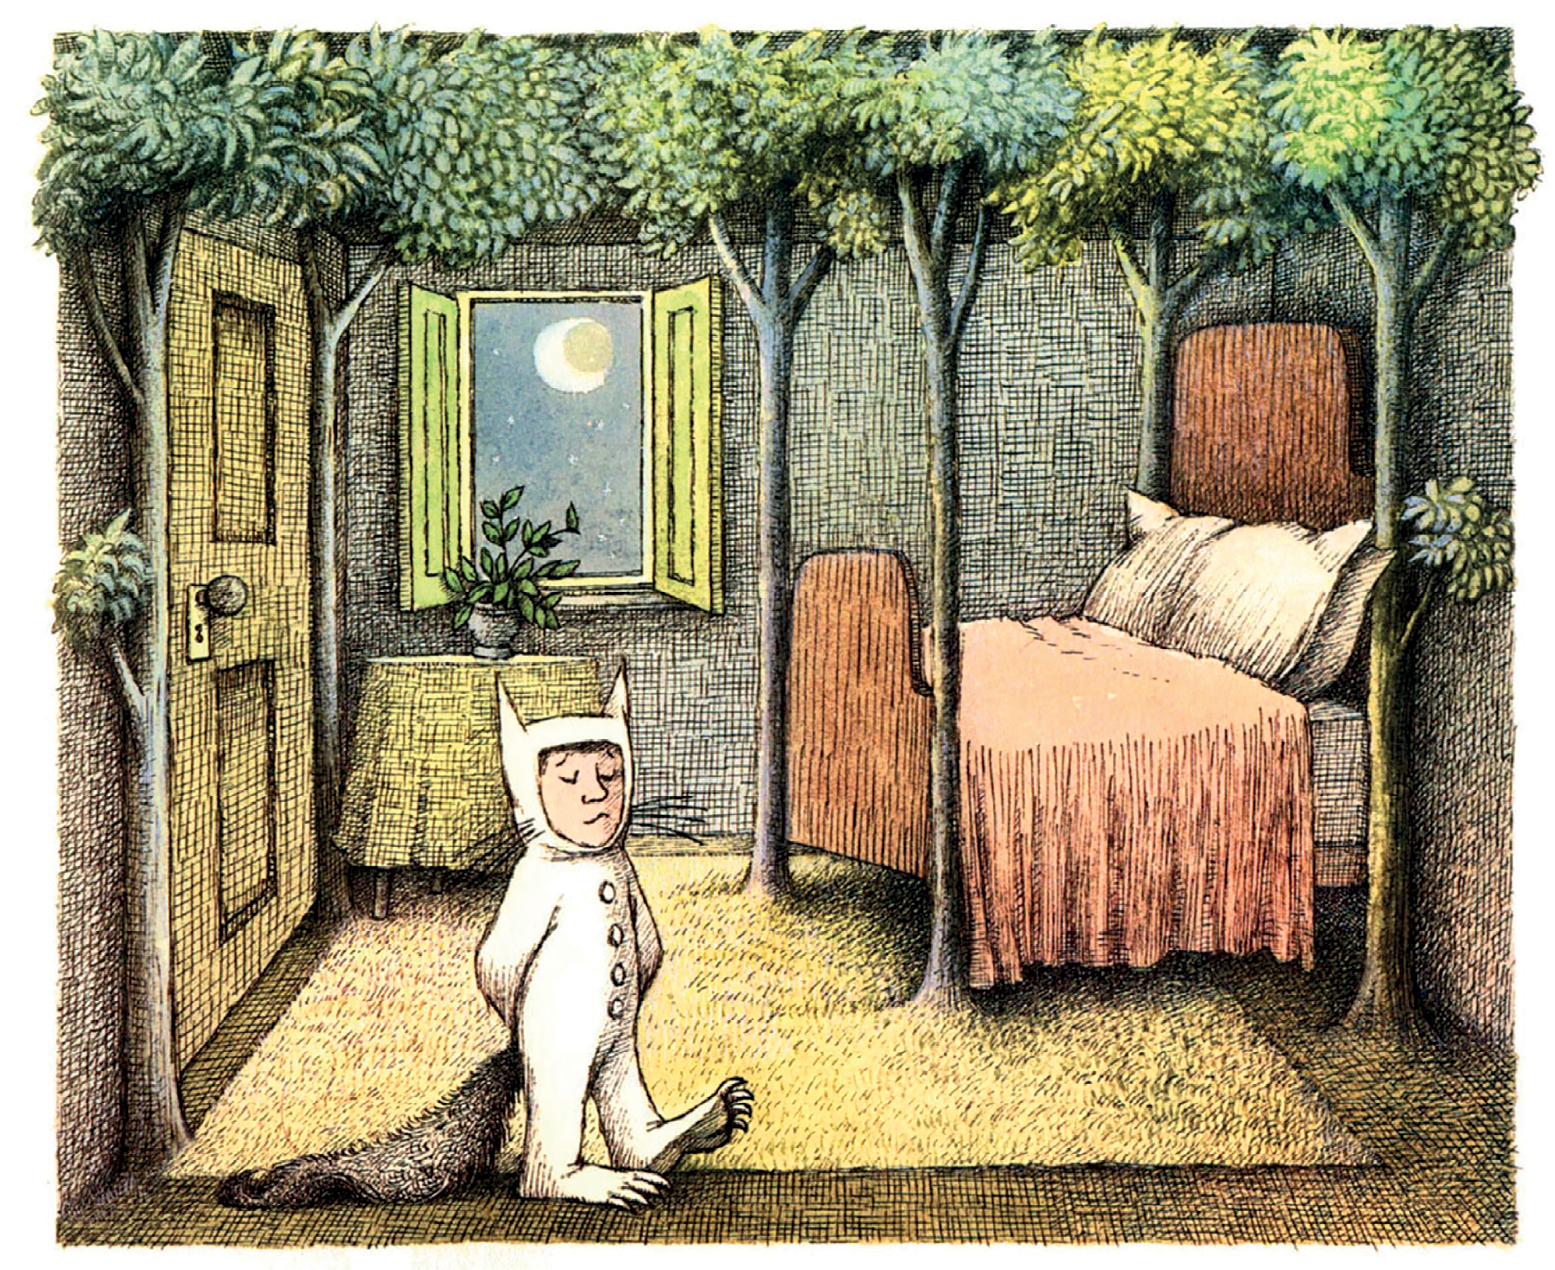 Ilustração. Um quarto com uma janela aberta ao fundo. À esquerda, uma porta e no centro da imagem um menino vestido de lobo. À direita, uma cama com um dossel feito de troncos de árvores. No chão há um tapete e, no teto, as folhas das árvores.